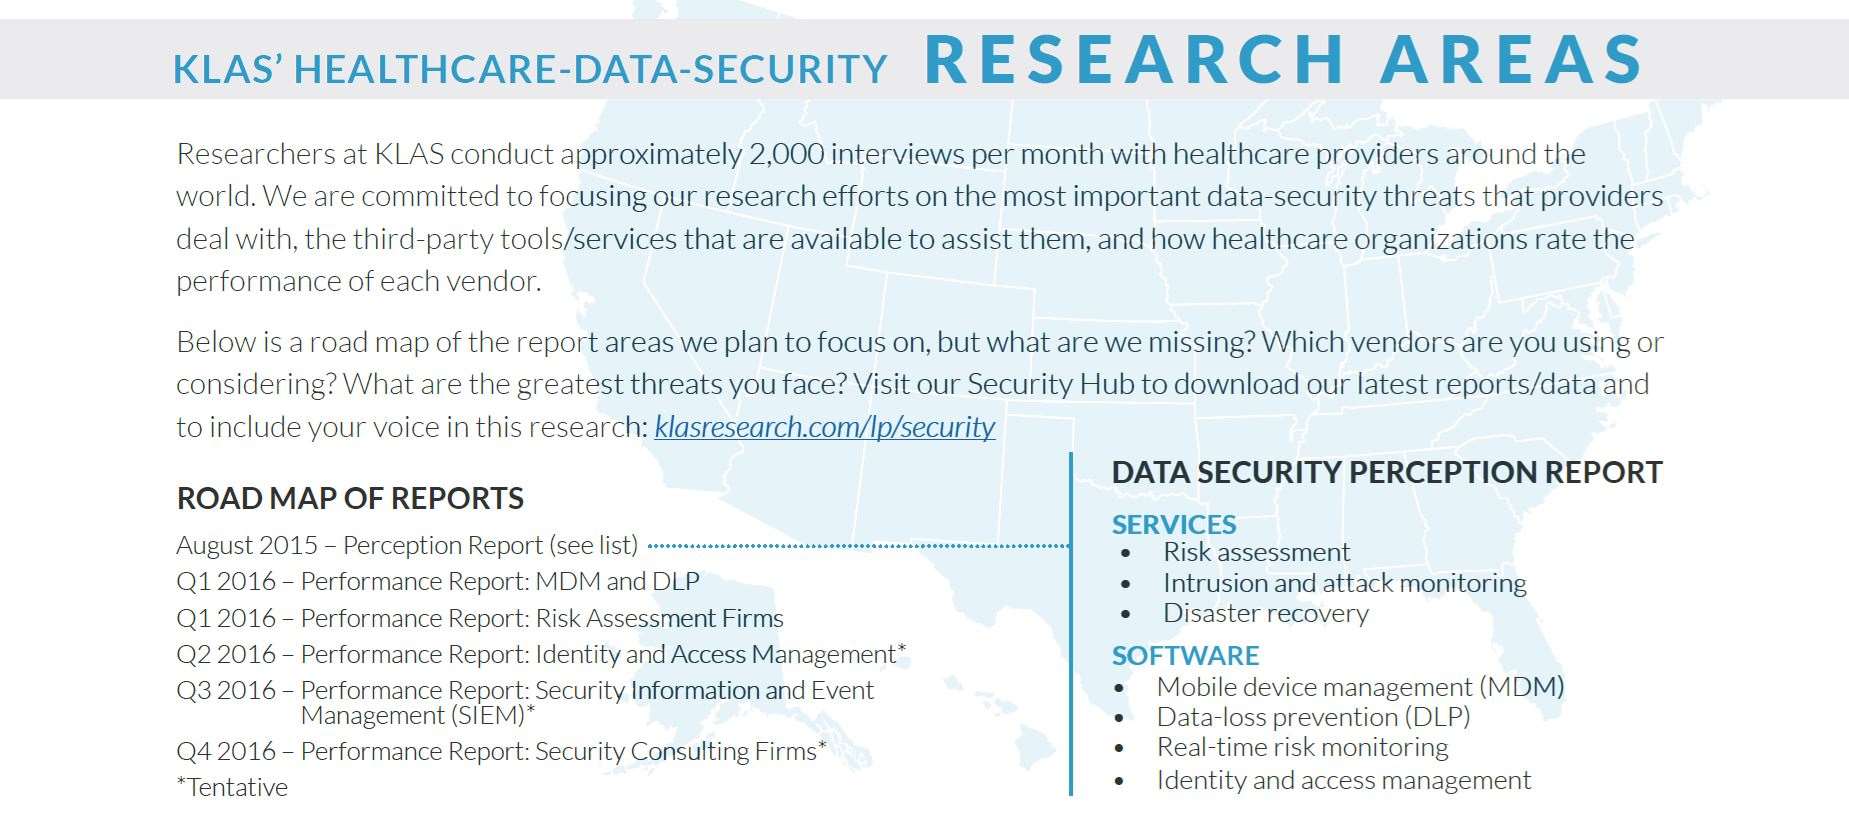 klas healthcare data security research areas